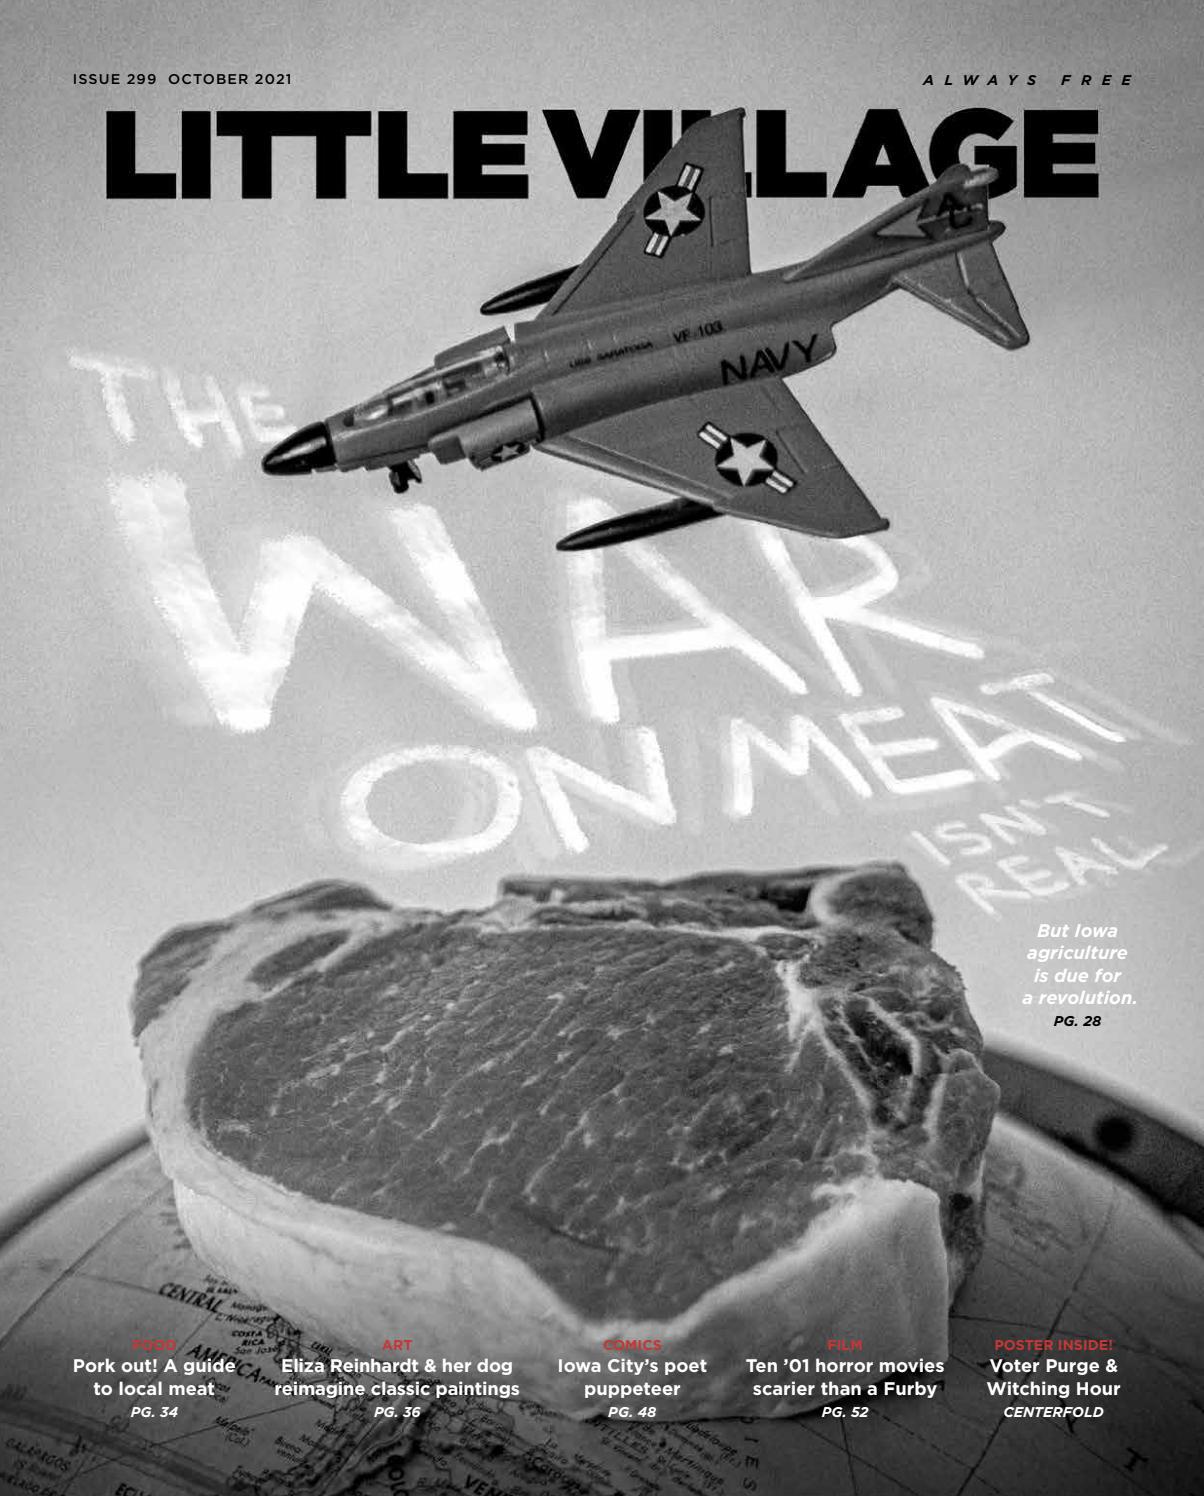 Little Village magazine issue 299: Oct. 2021